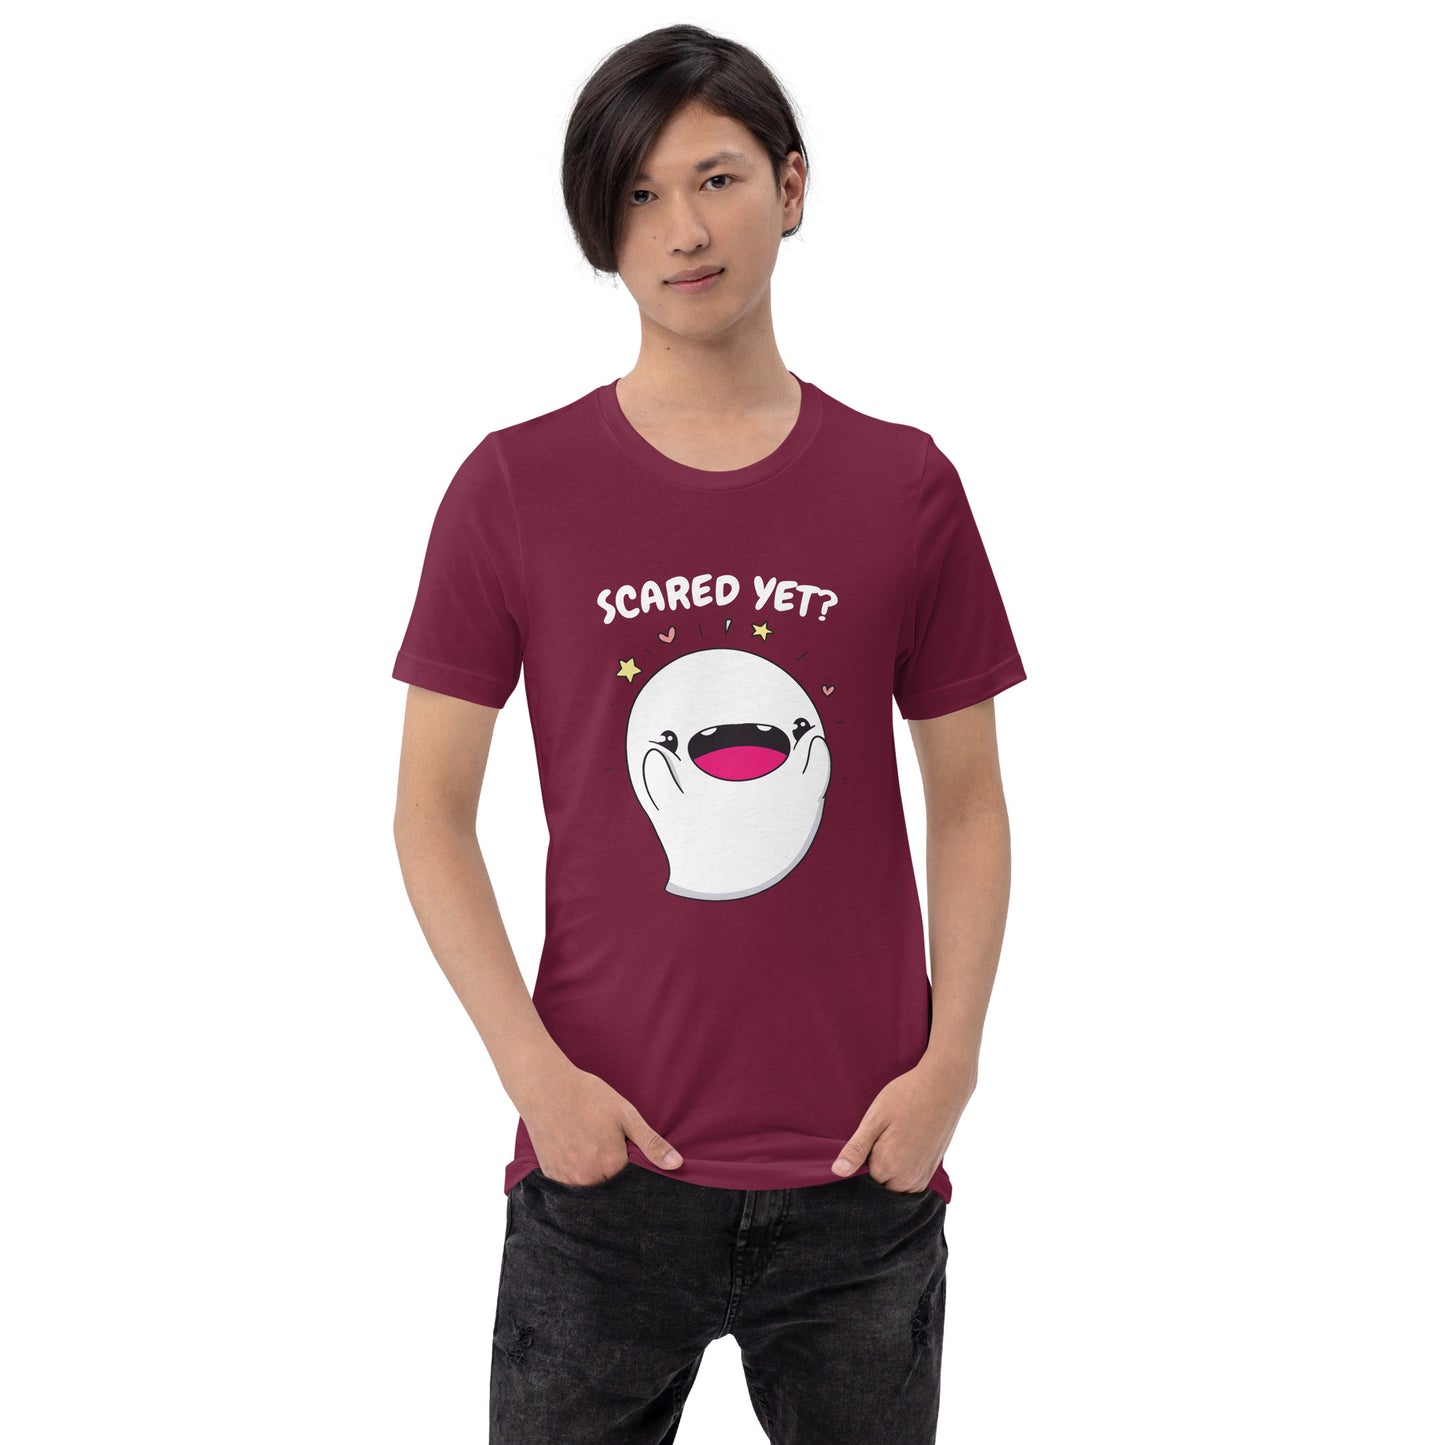 Scared yet - Unisex t-shirt